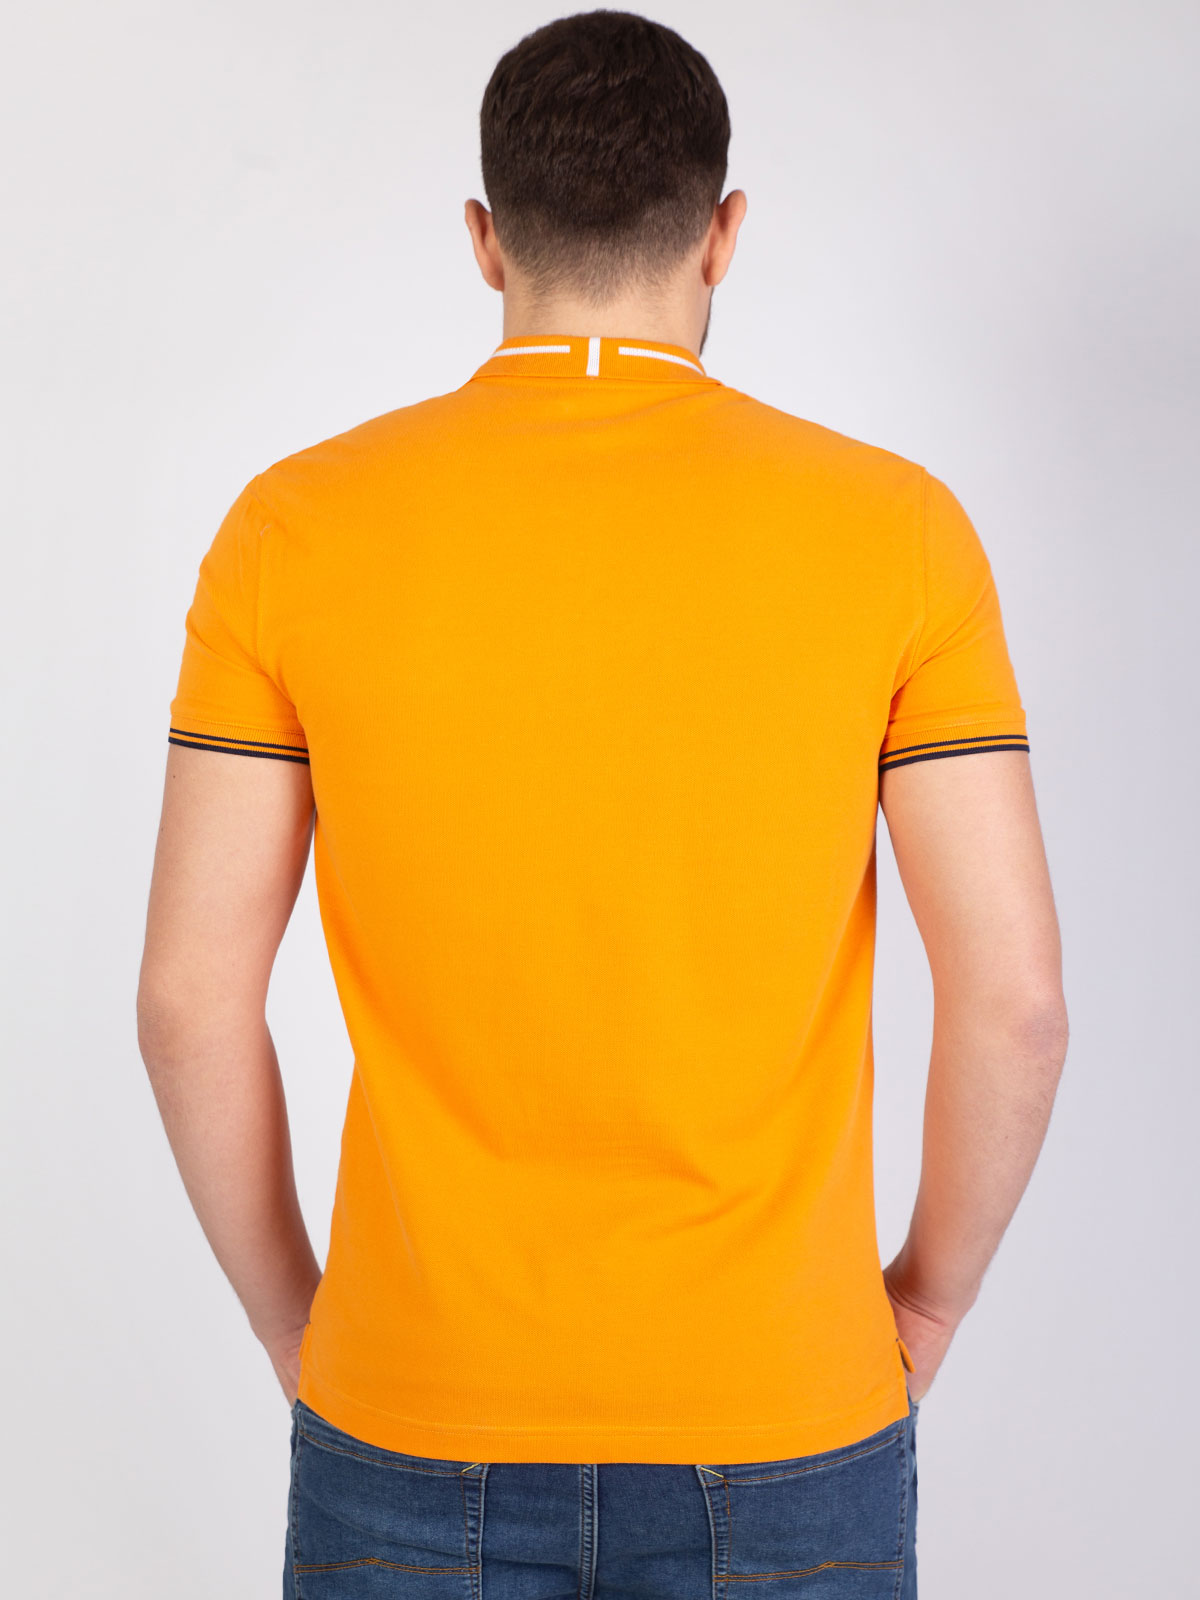  μπλούζα σε πορτοκαλί χρώμα με πλεκτό γι - 93406 € 27.56 img4